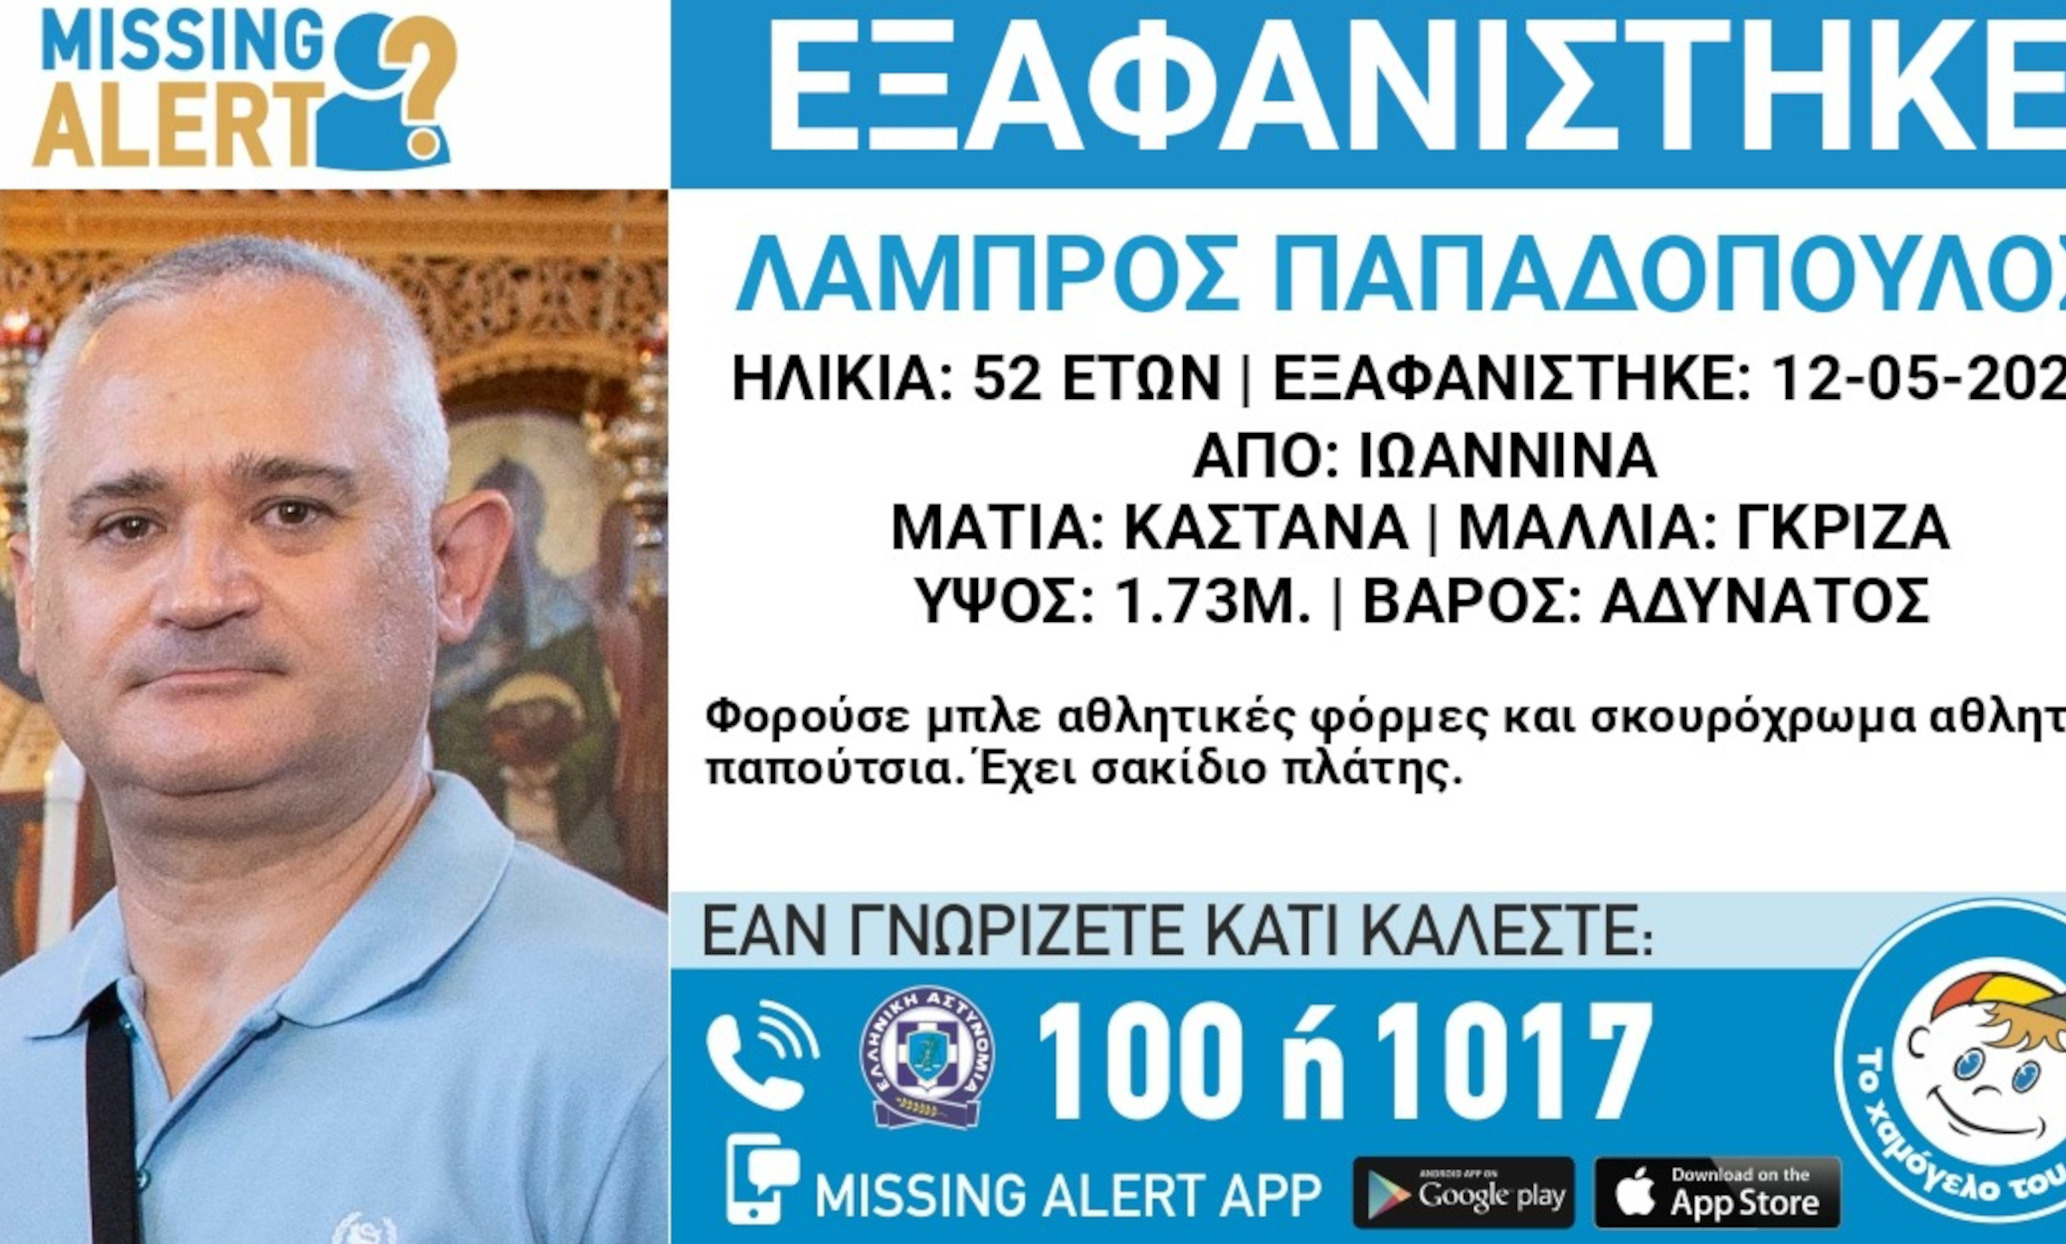 Ιωάννινα: Missing alert για εξαφάνιση 52χρονου